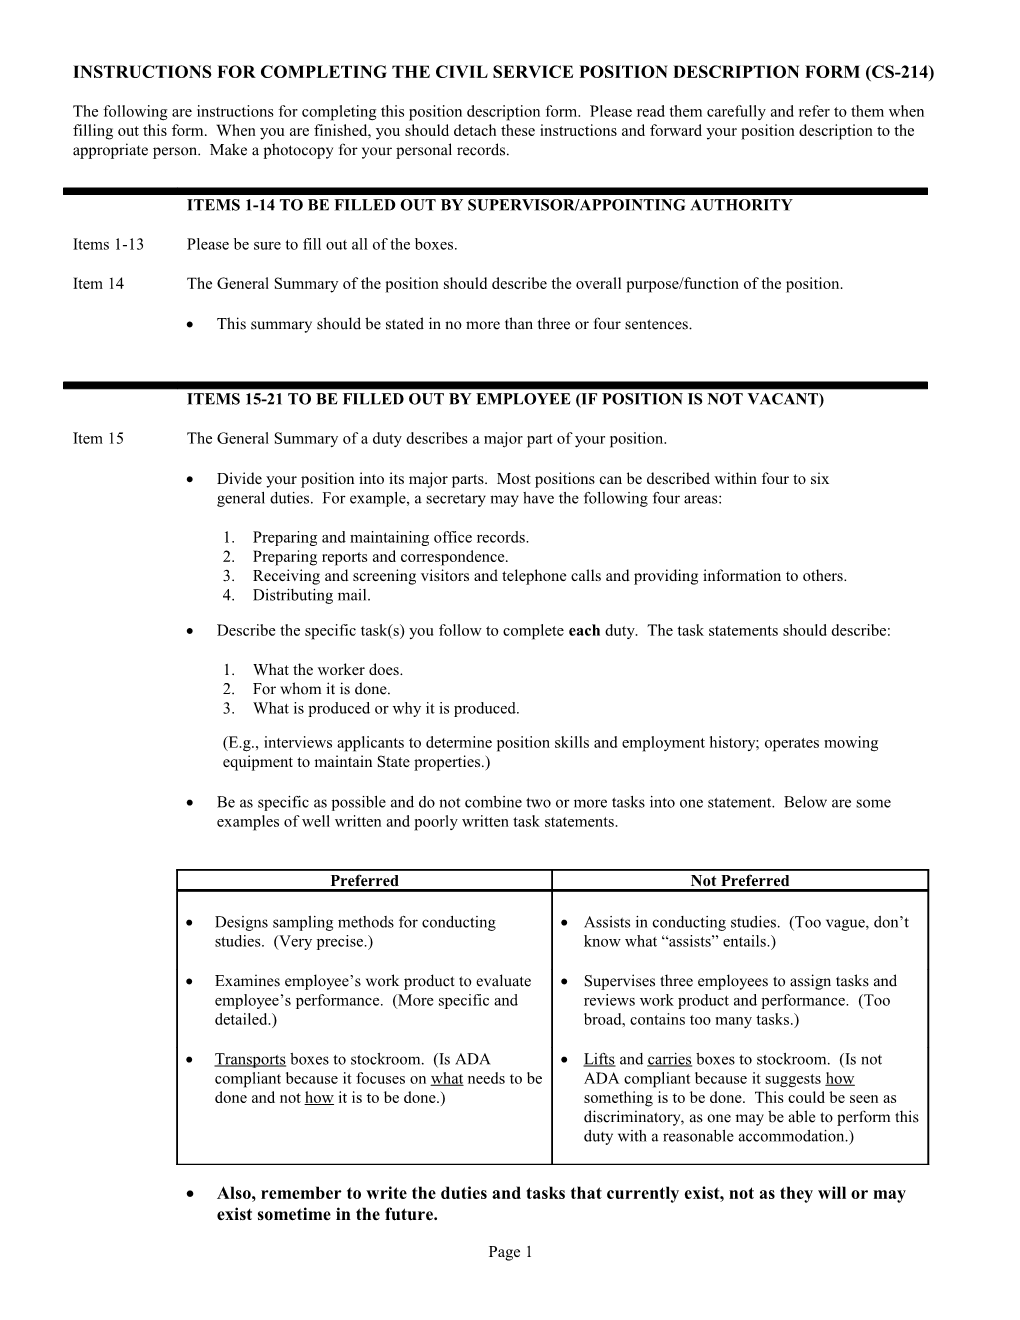 CS-214 Position Description Form s33